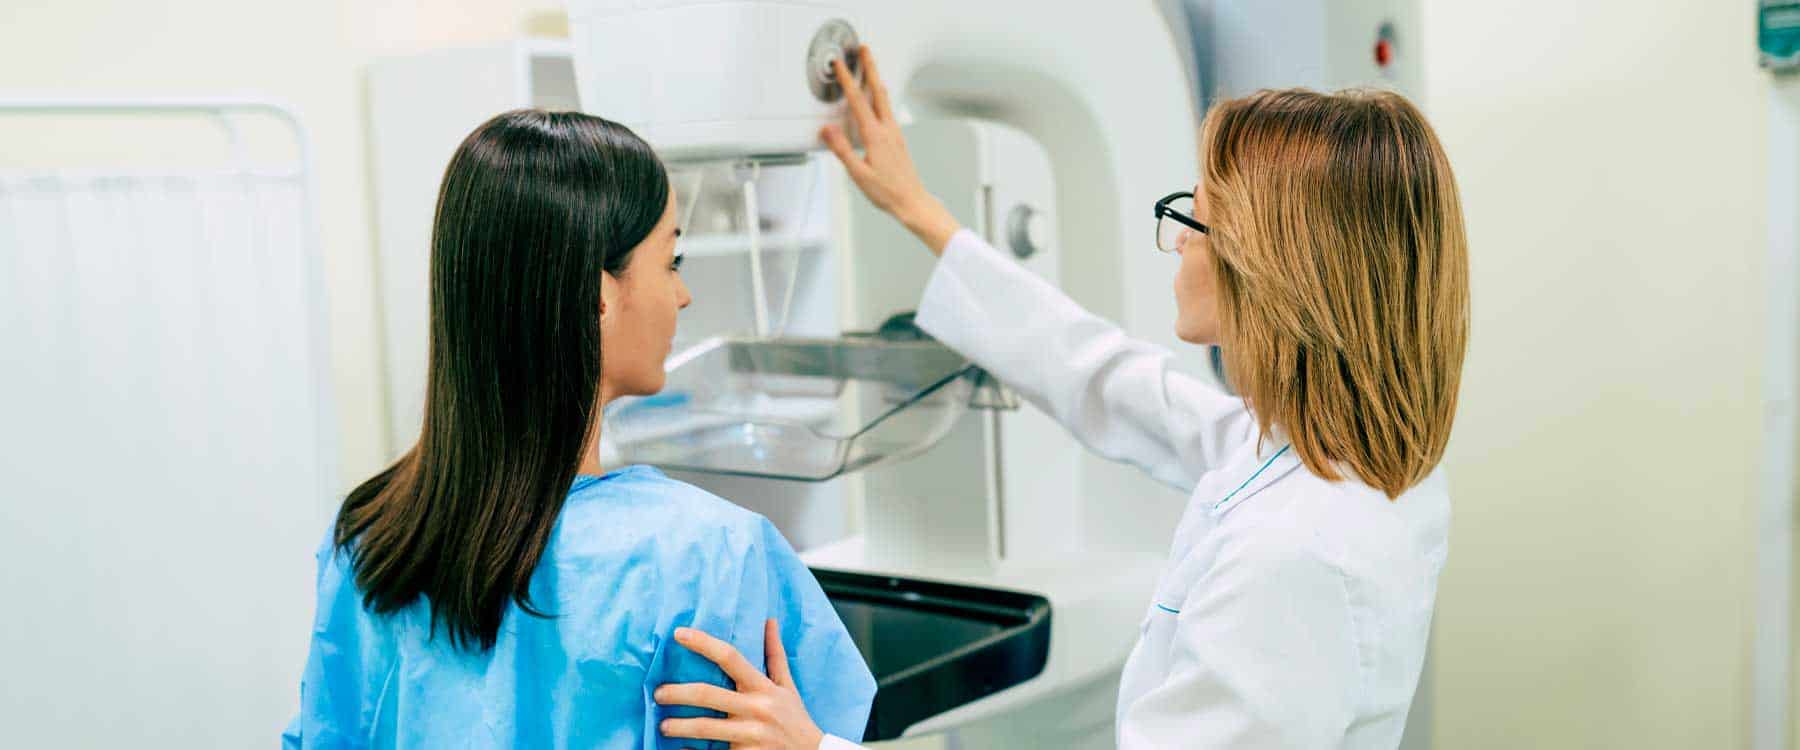 selo mamografia cbr radiologia diagnóstico por imagem